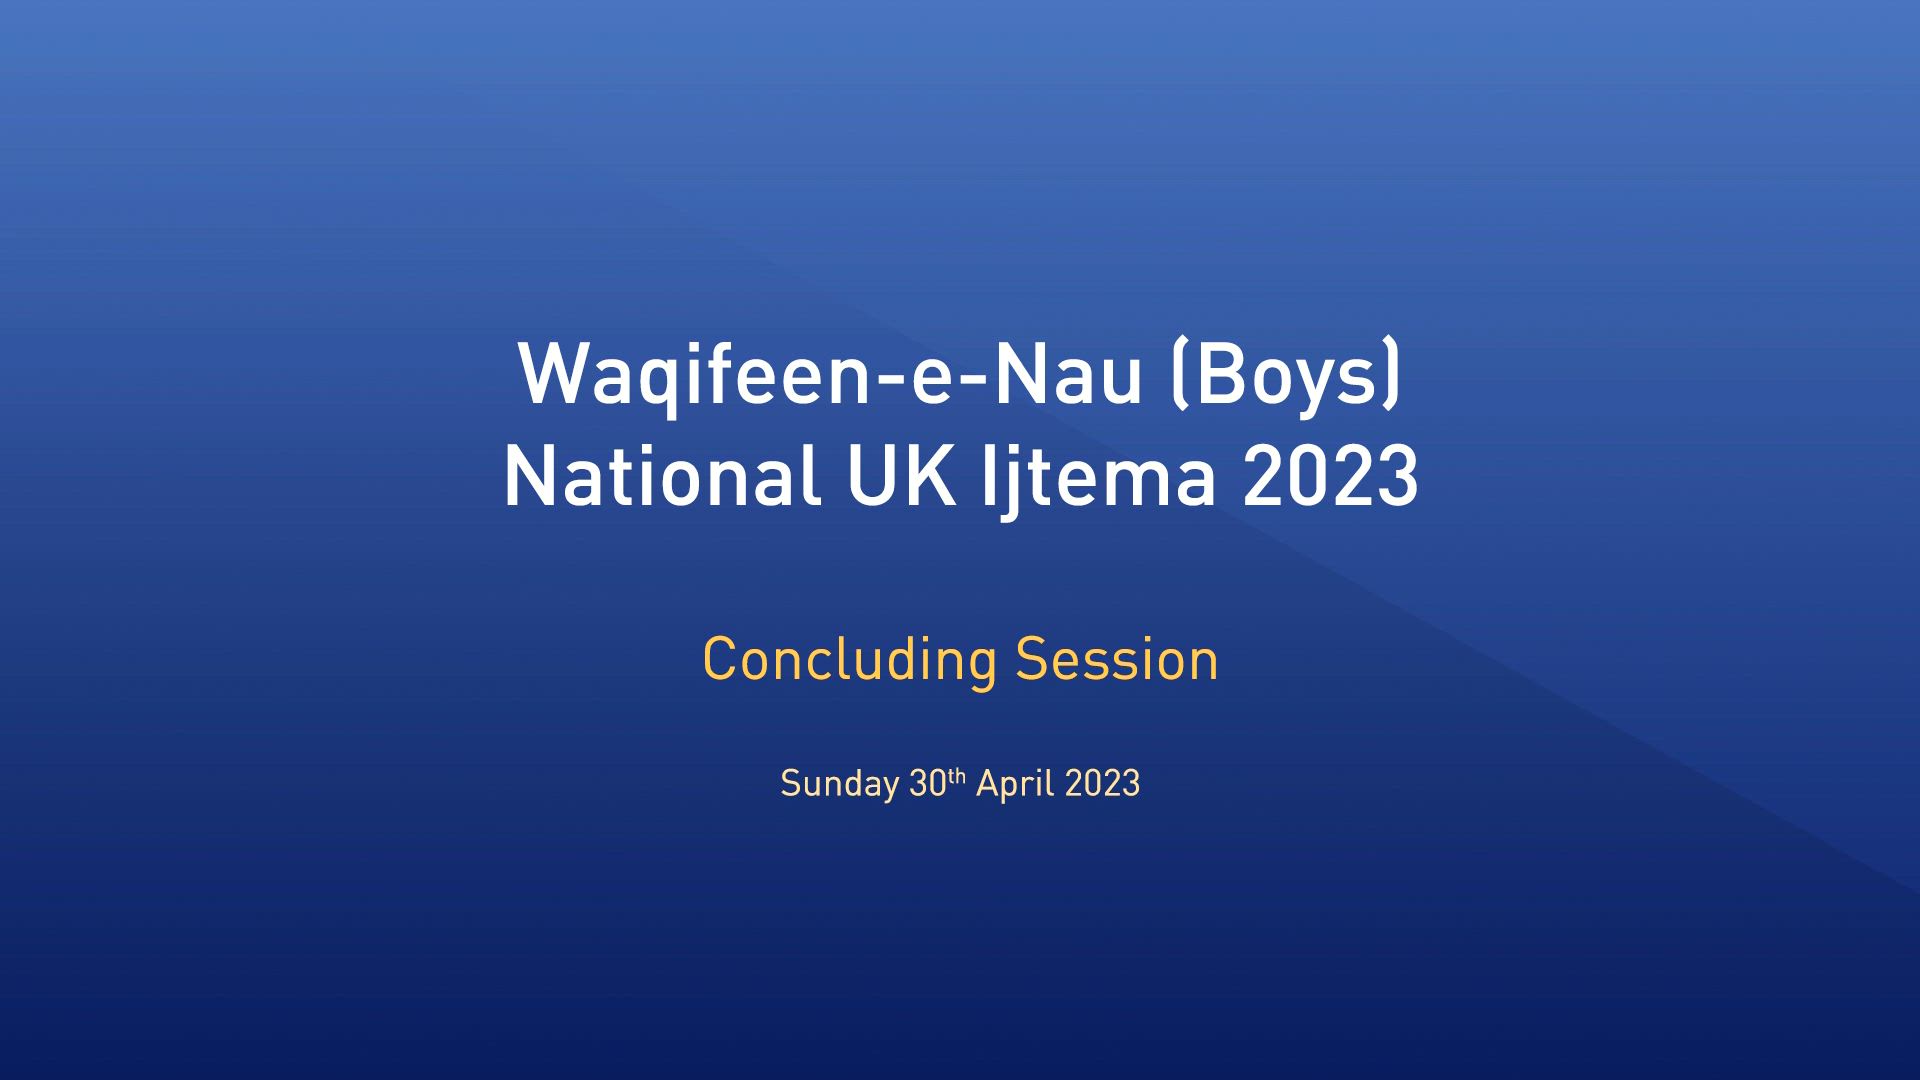 National Waqfeen-e-Nau Ijtema